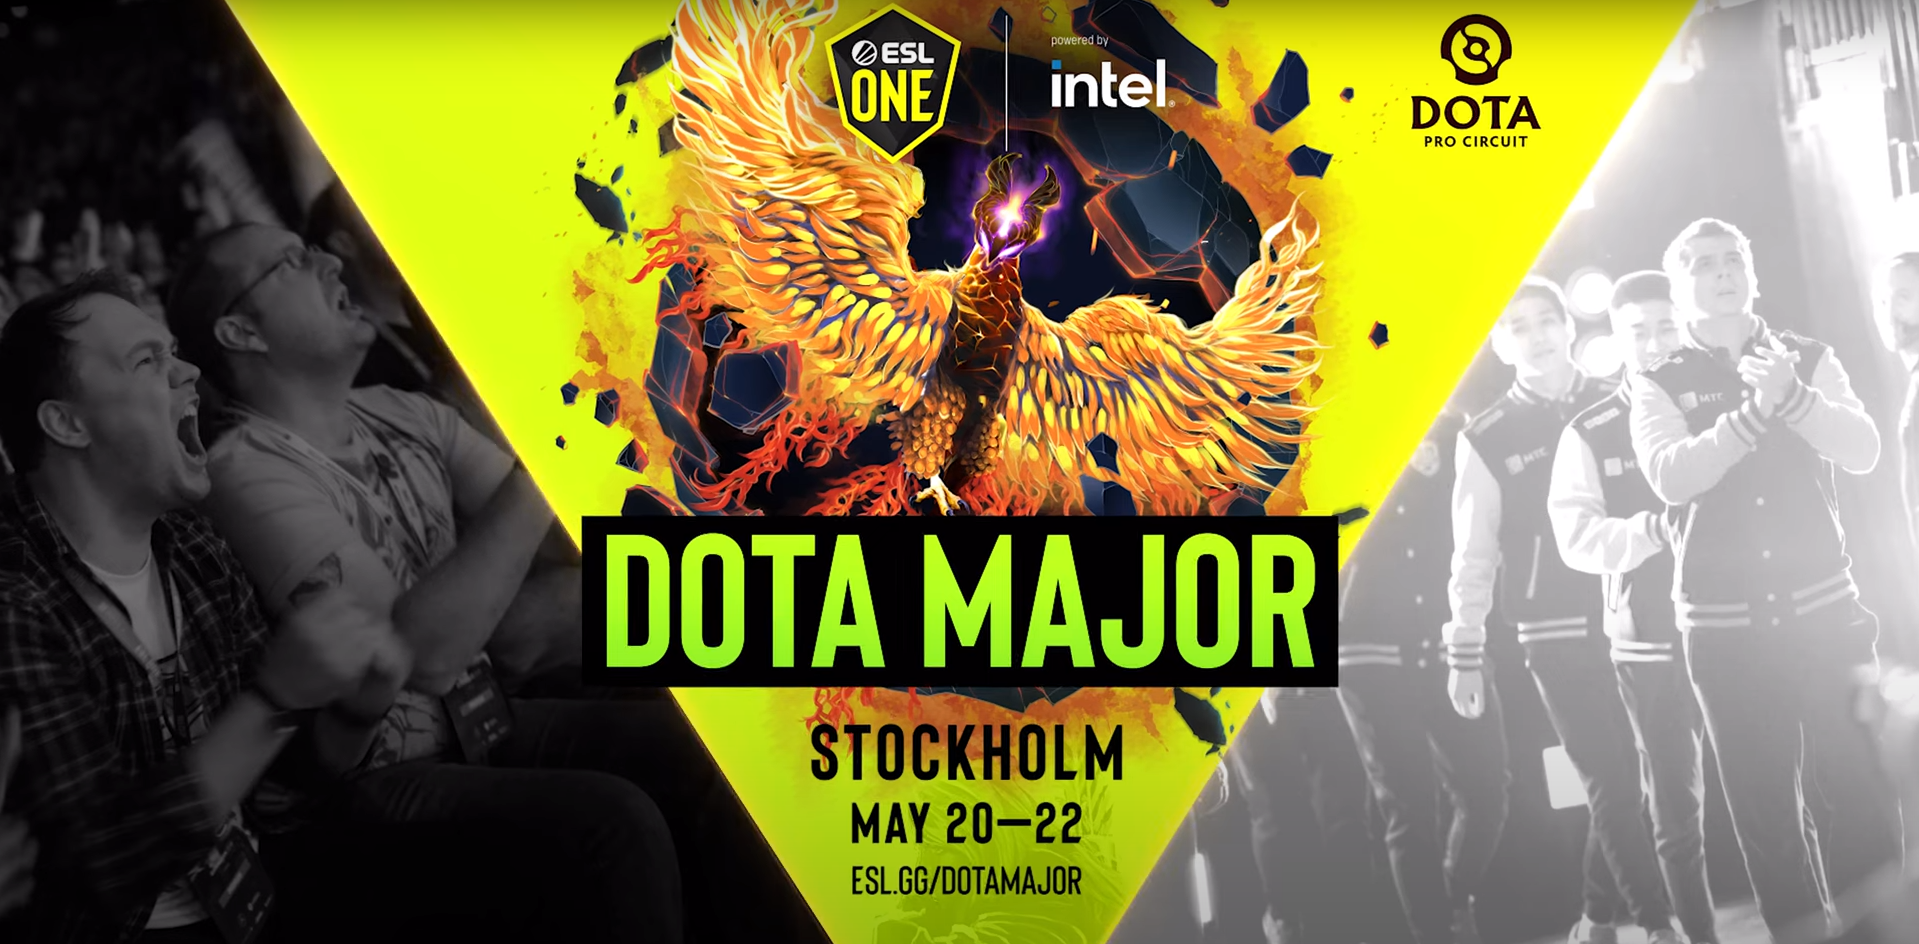 ESL проведет майский мейджор по Dota 2 в Стокгольме